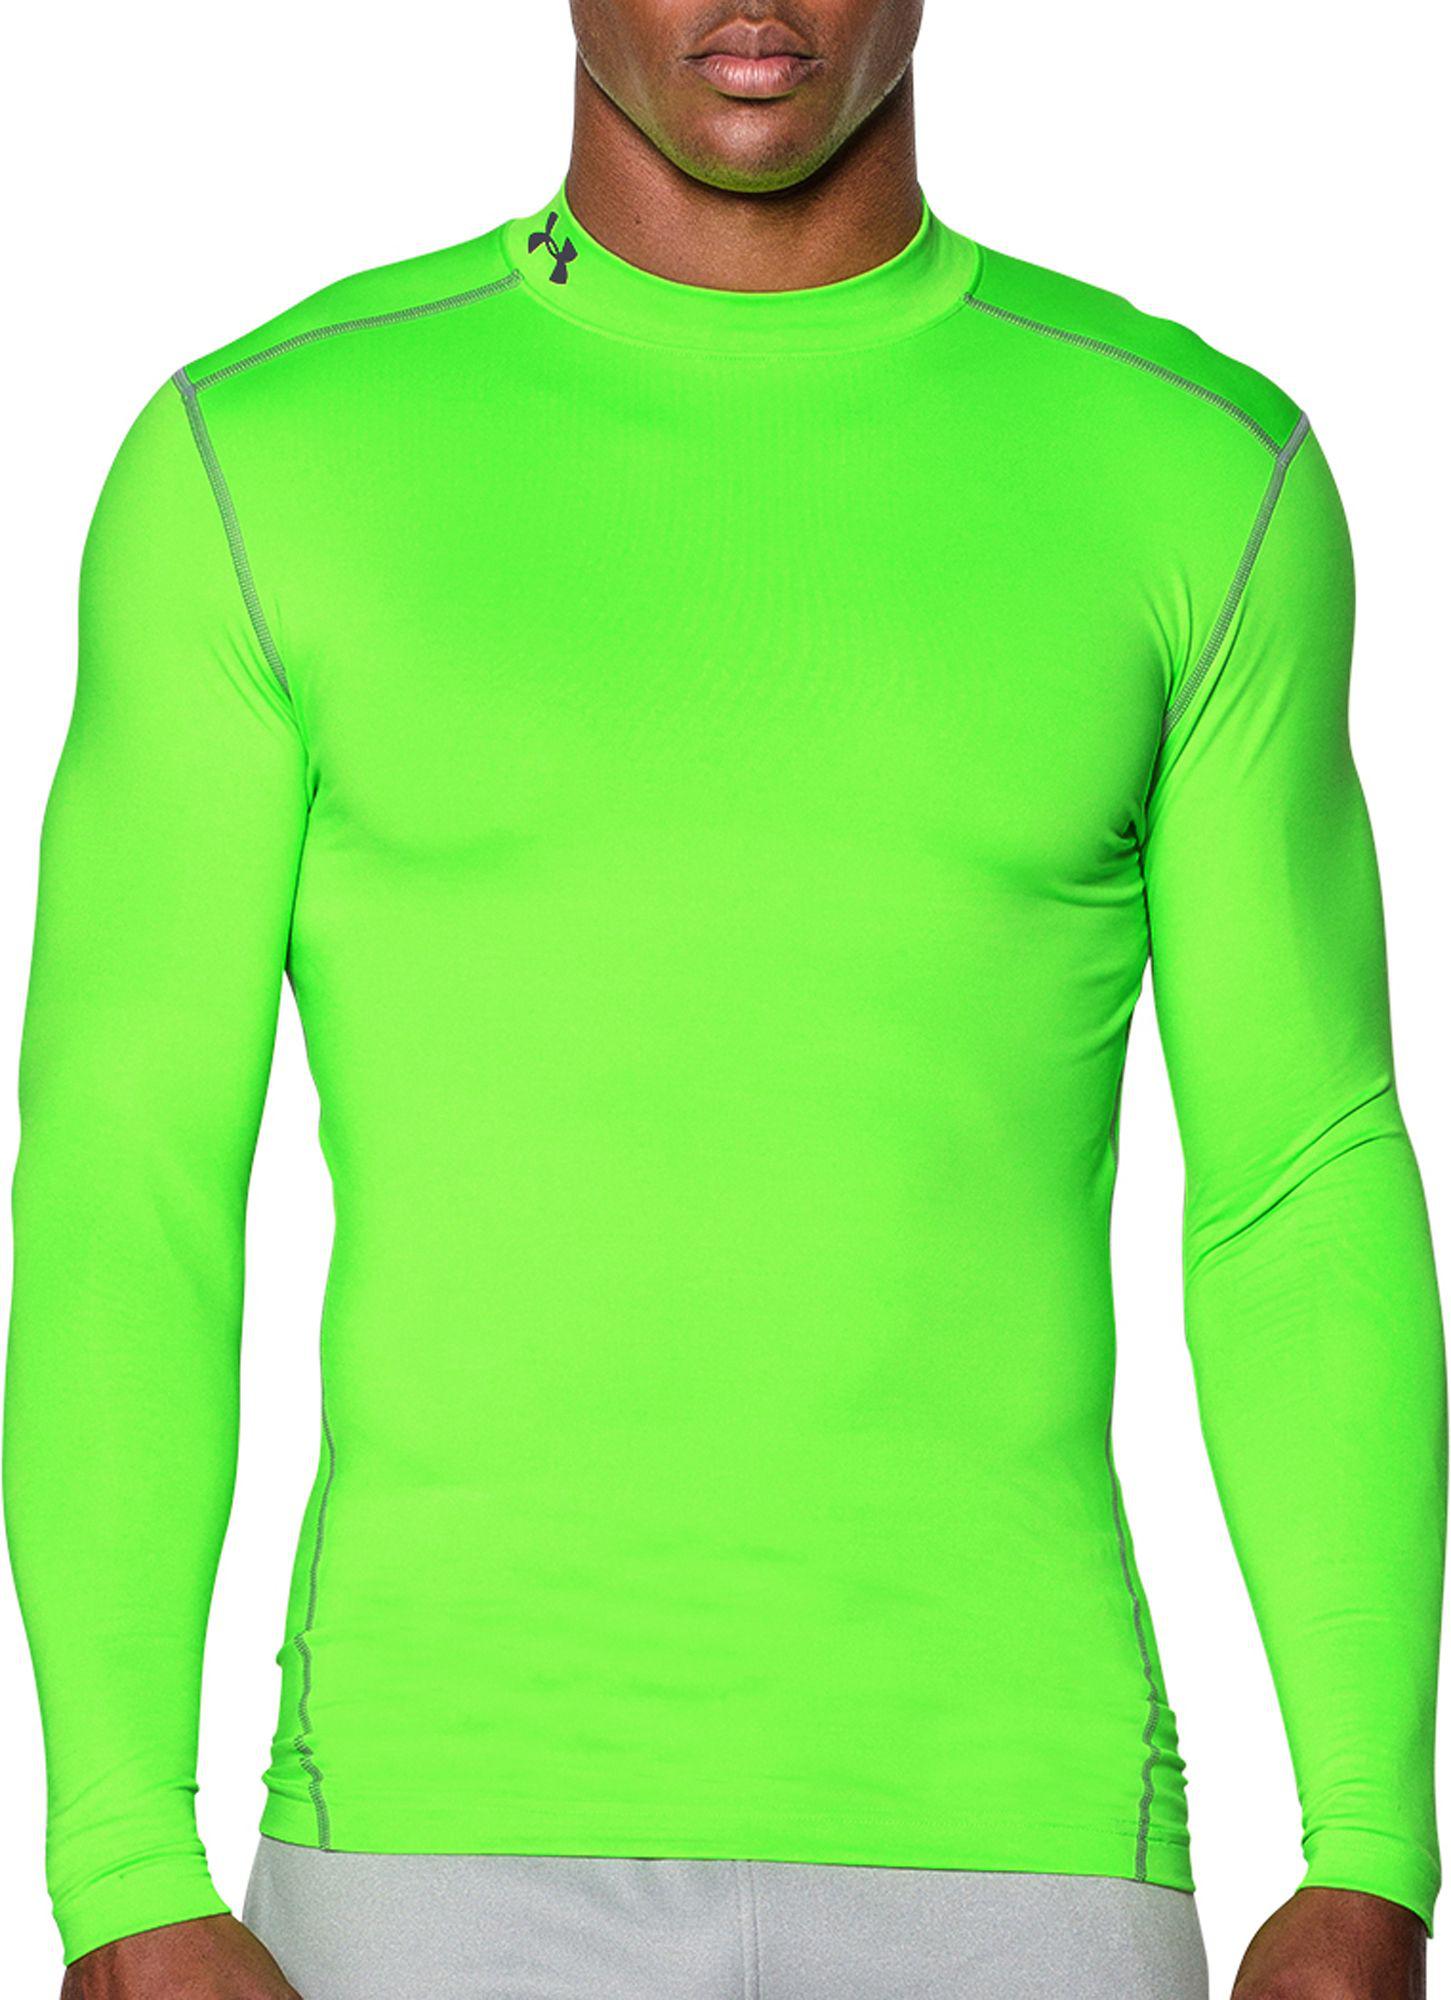 under armour green long sleeve shirt